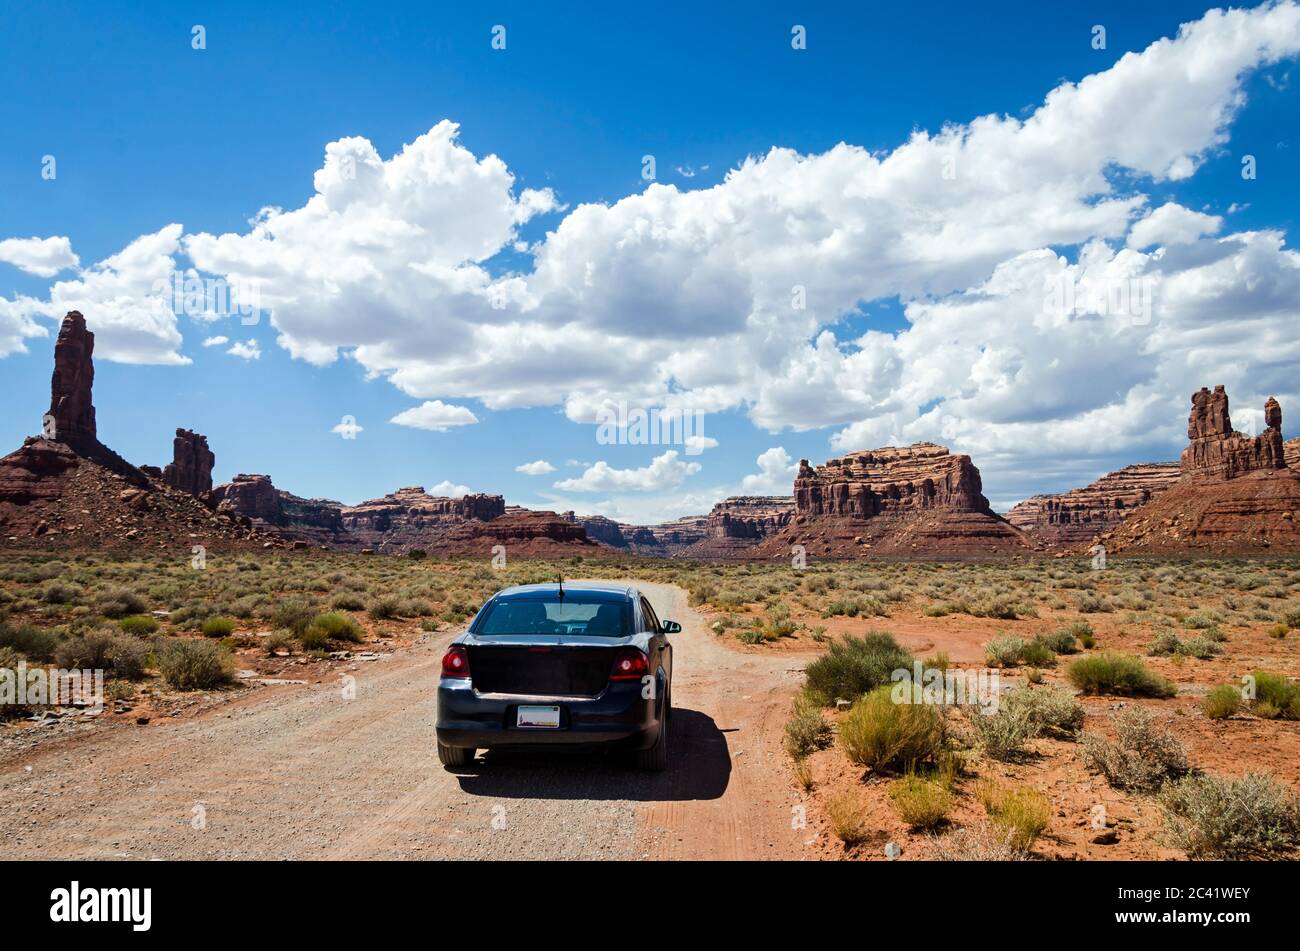 Auto auf einer unbefestigten Straße in einer malerischen Wüstenlandschaft mit Felsen im Hintergrund Stockfoto